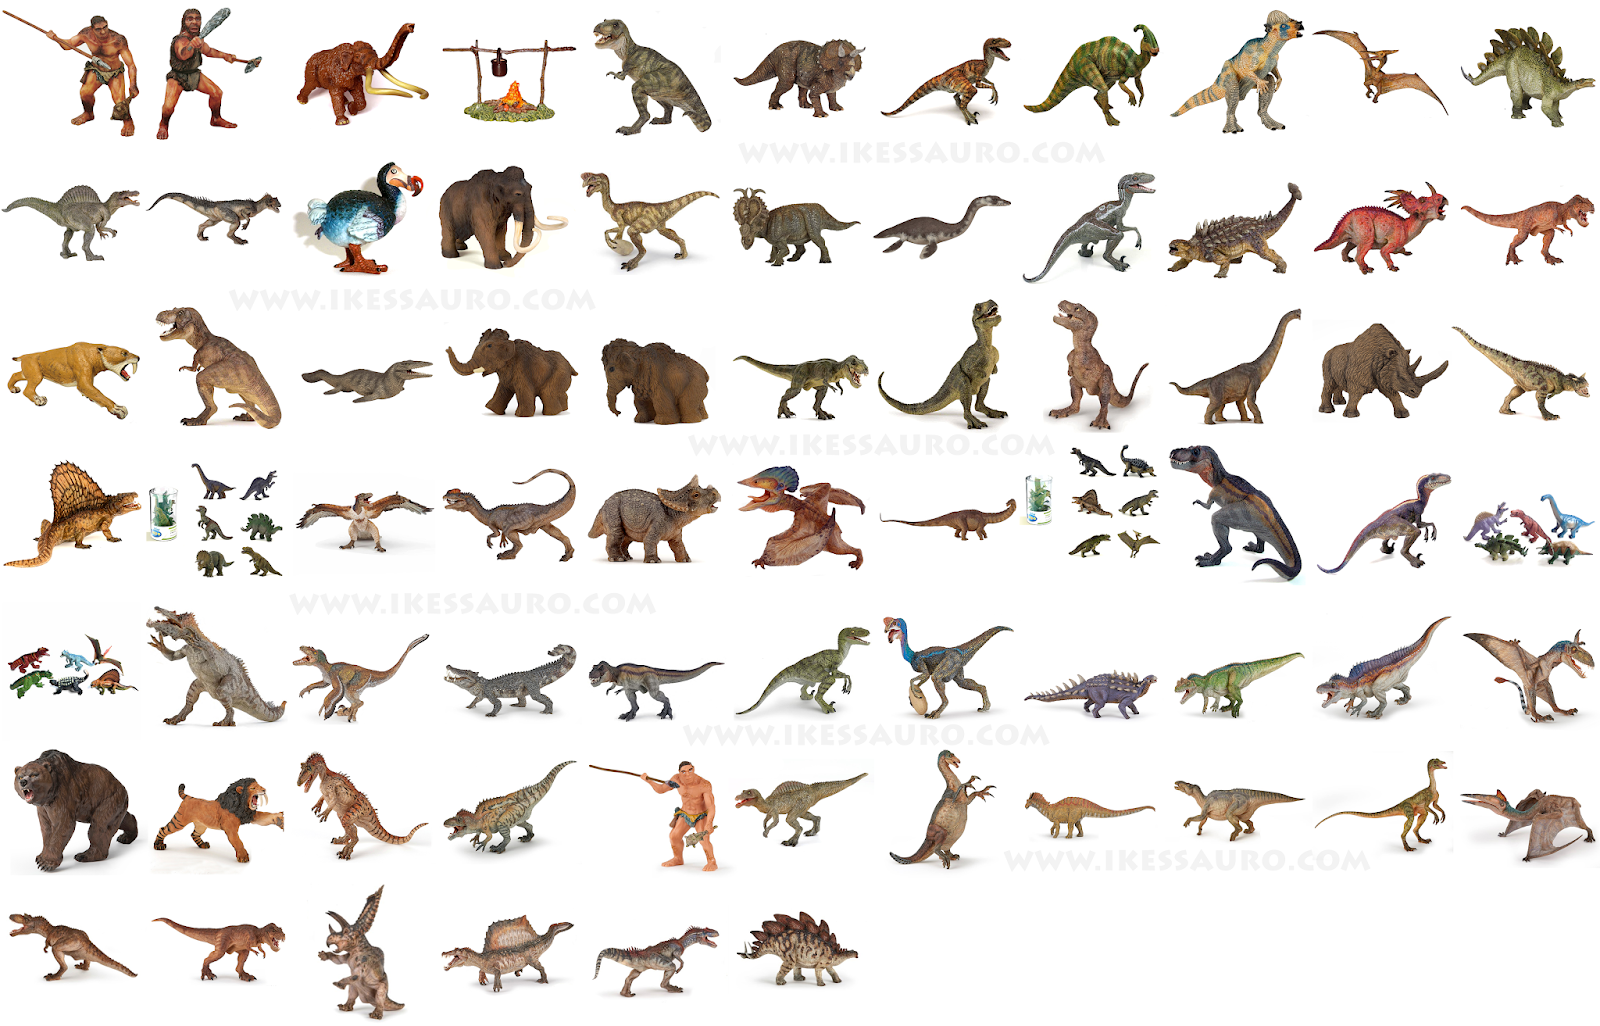 Dinossauros e companhia: a diversidade de animais do Brasil pré